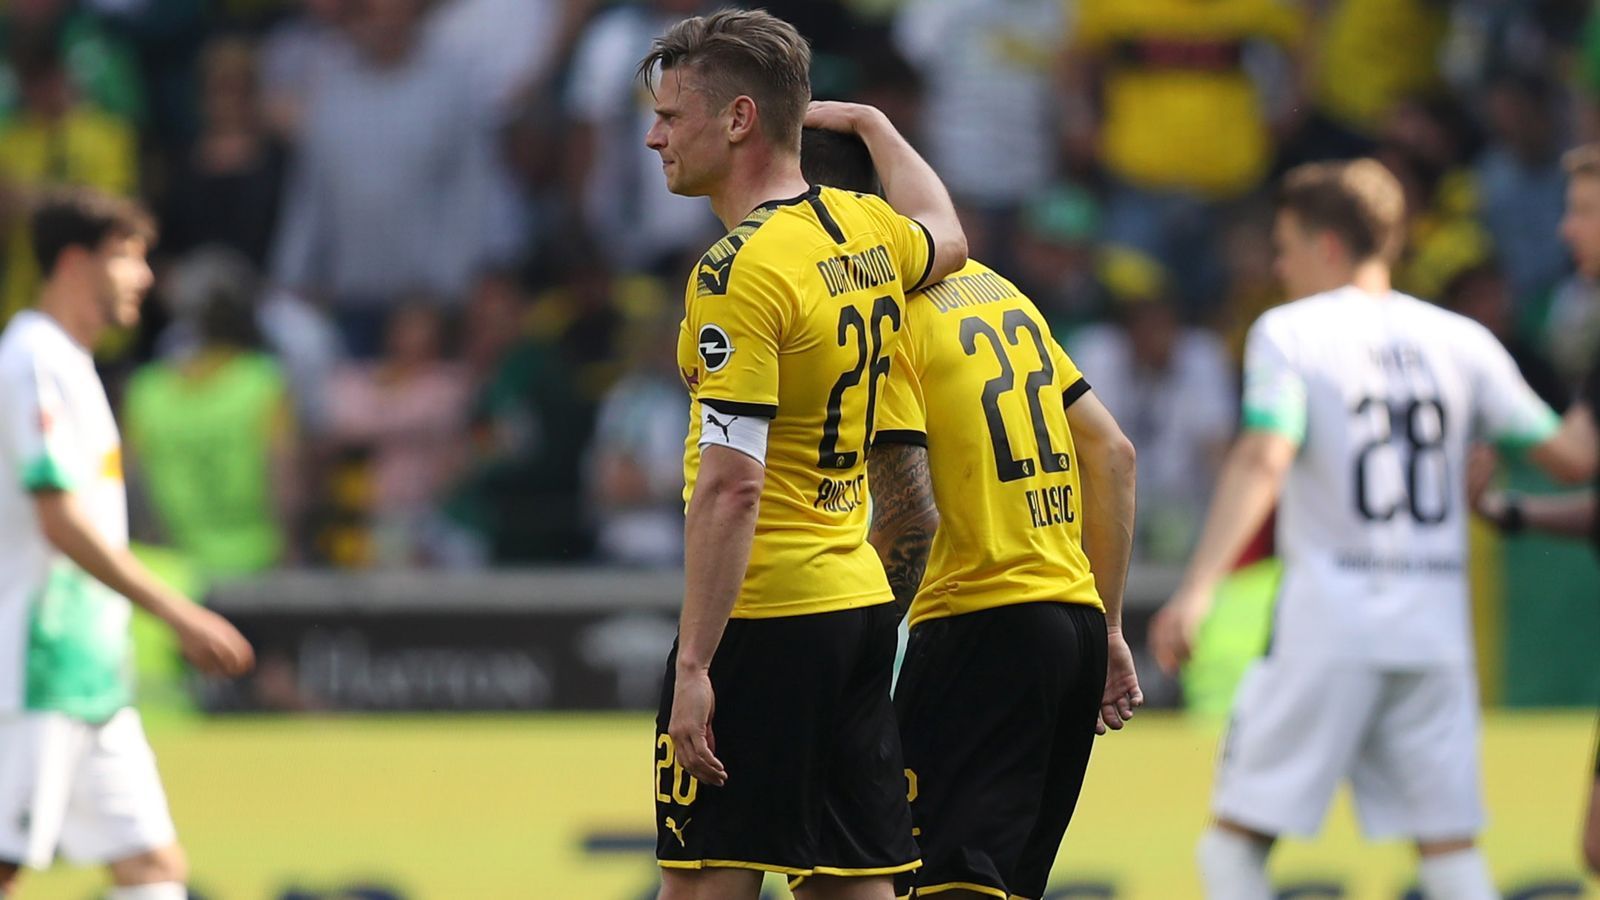 
                <strong>Enttäuschung bei Borussia Dortmund</strong><br>
                Dortmund hat seine Hausaufgaben gemacht - und steht trotzdem ohne Titel da. Nach dem 2:0-Sieg in Gladbach herrscht Ernüchterung. Dennoch haben die Borussen eine bärenstarke Saison gespielt, die Fans können stolz sein.
              